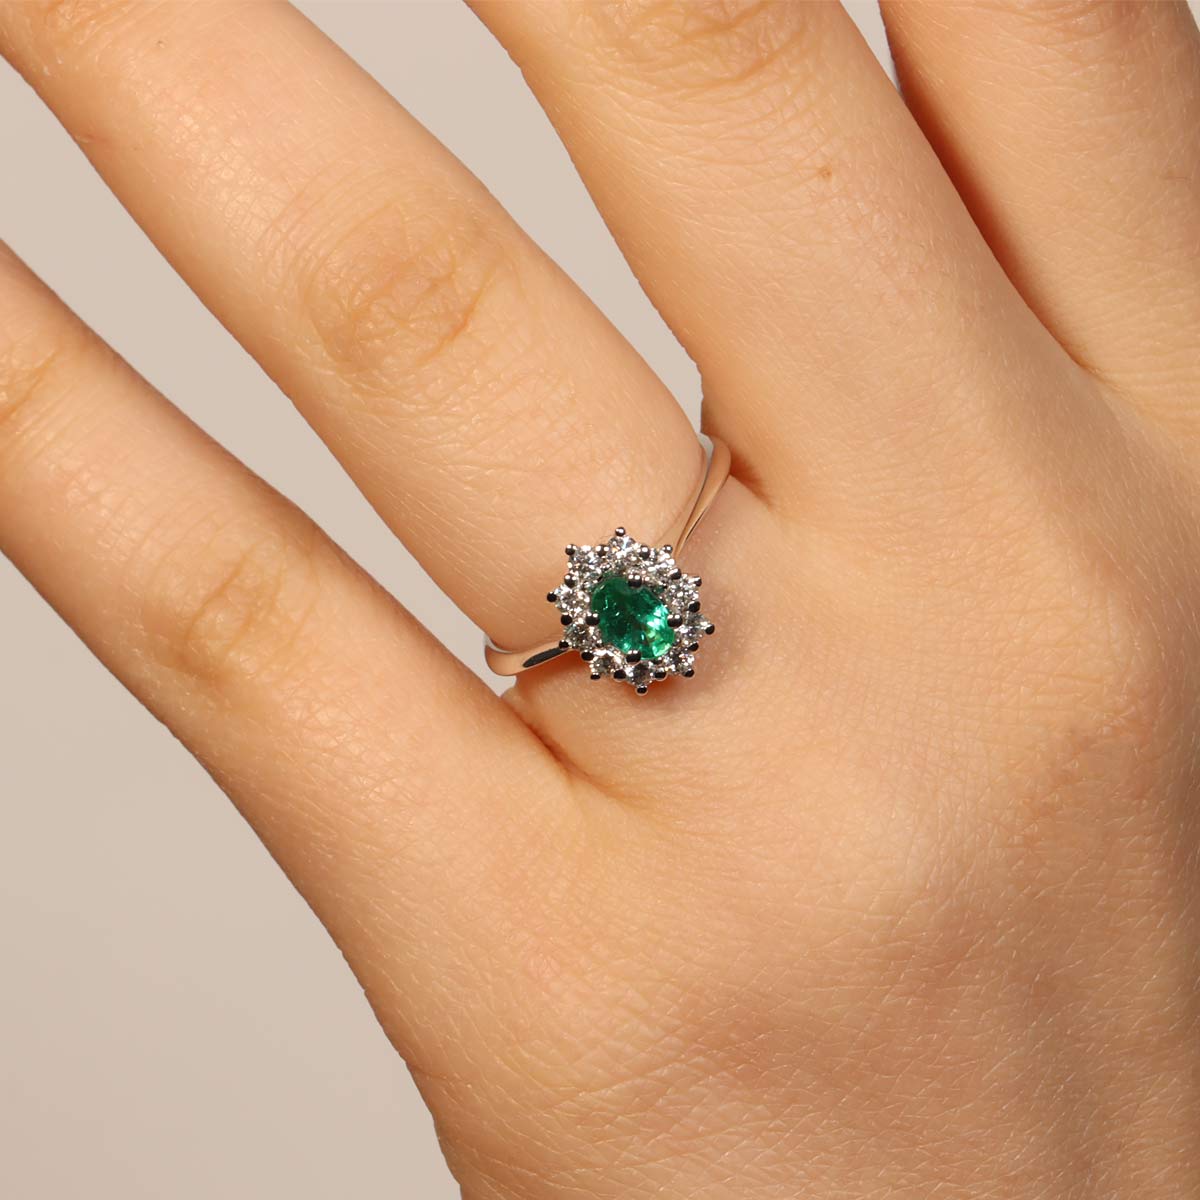 Fabio Ferro Kate Medium Ring with Emerald and Diamonds Brilliant Cut